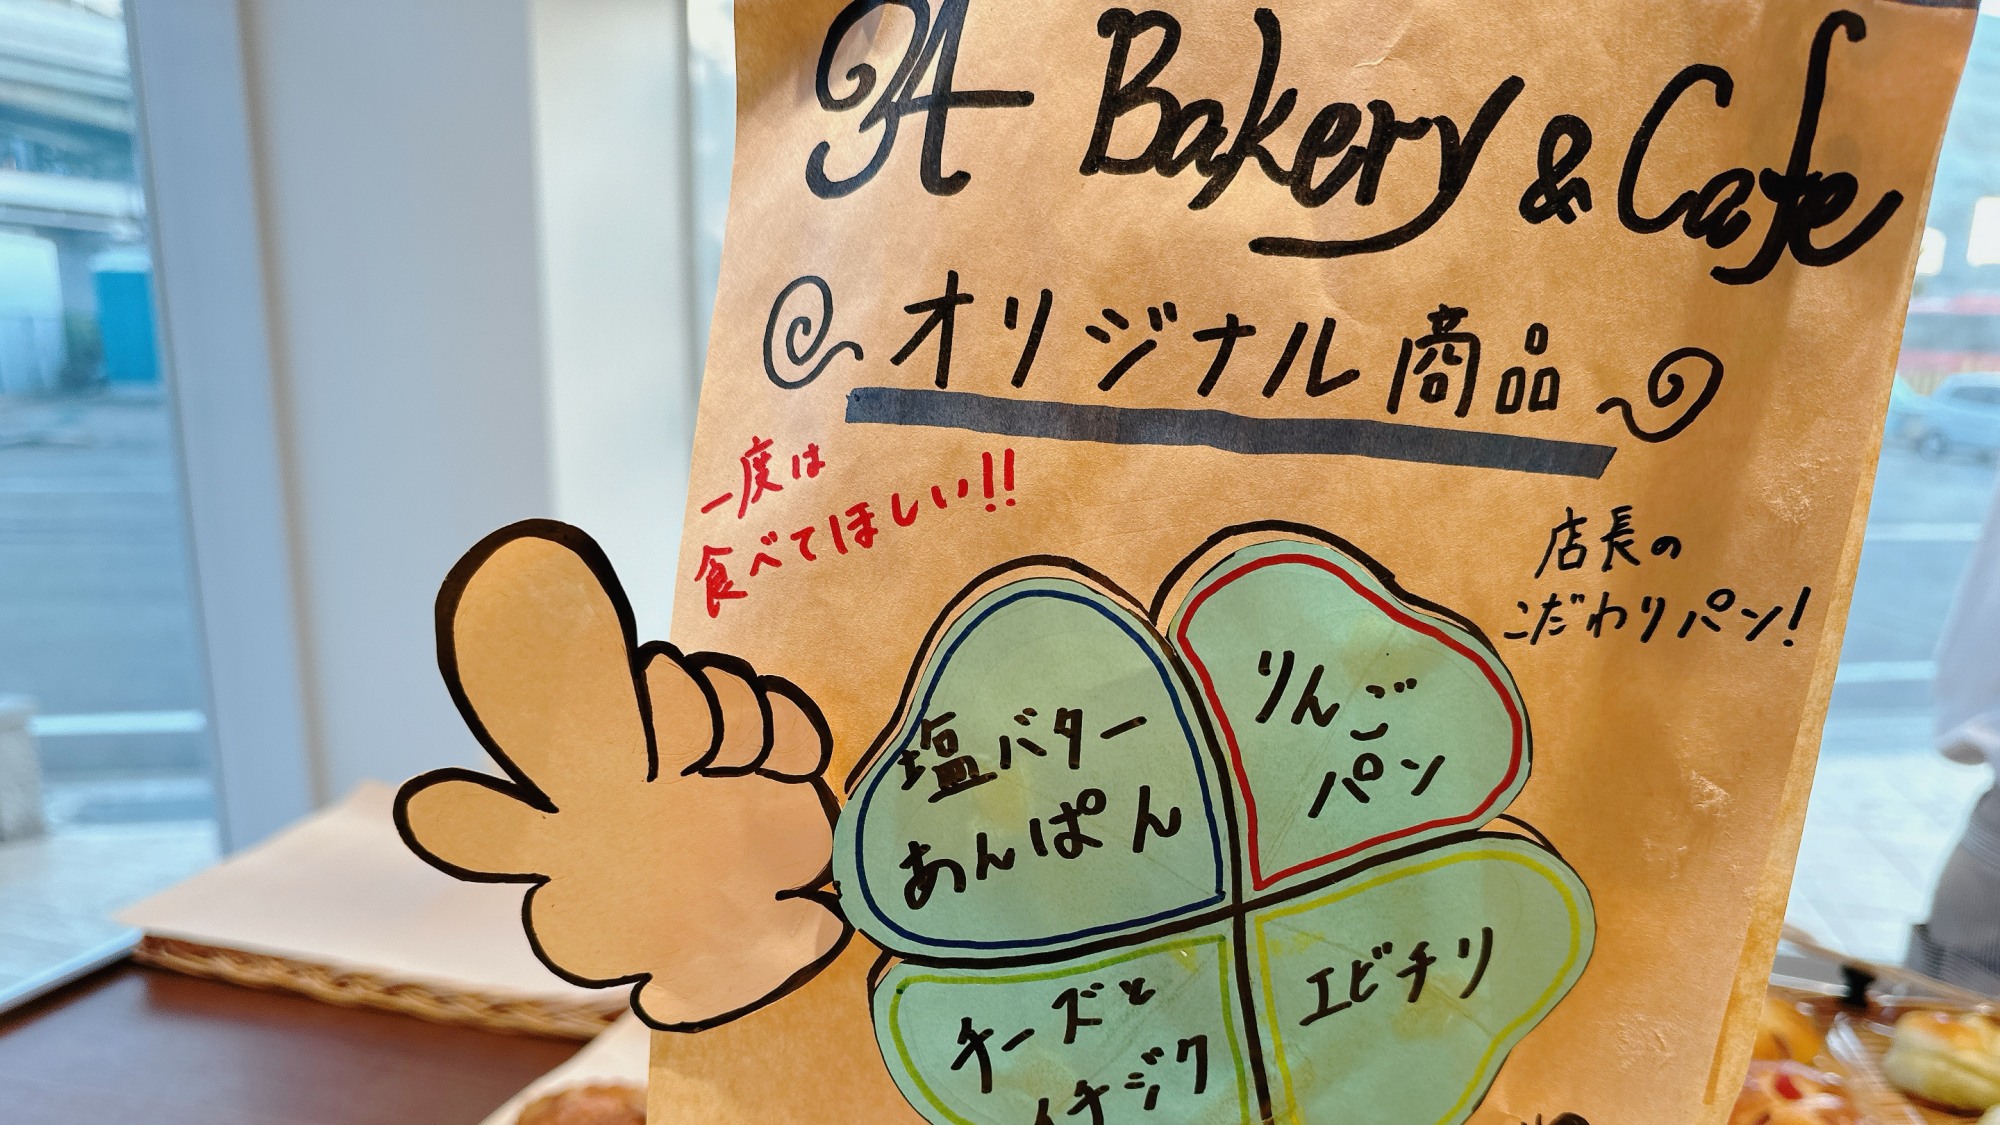 【ホテル併設34Bakery&Cafe】職人歴20年の店主が作る最大120種のパンがお出迎え♪